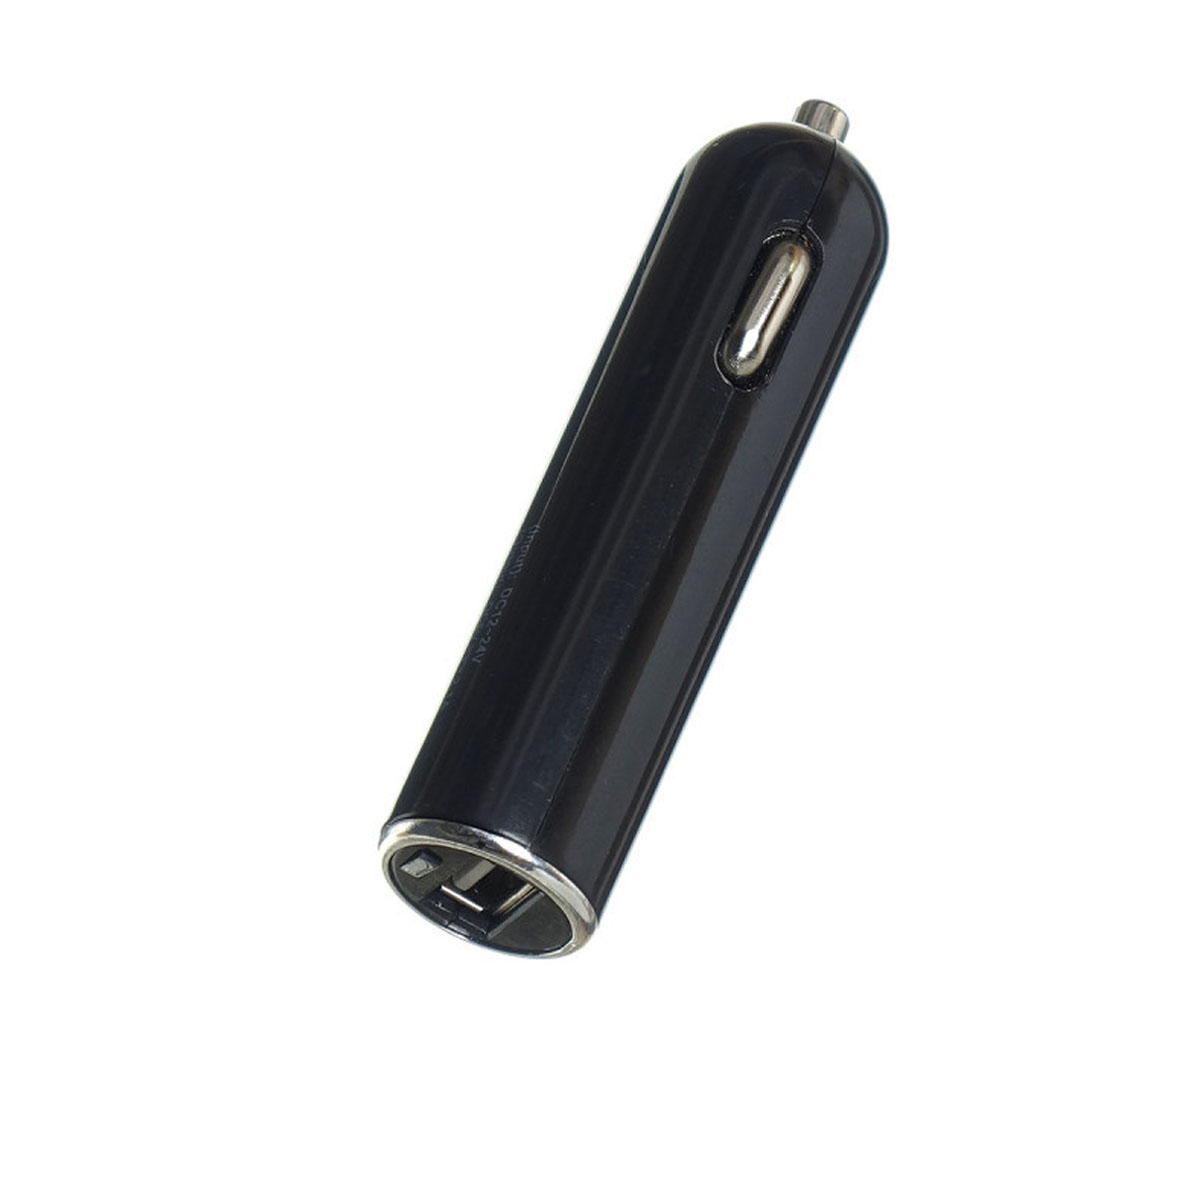 АЗУ (Автомобильное зарядное устройство) MRM MR11A, 2.4A, 1 USB, цвет черный